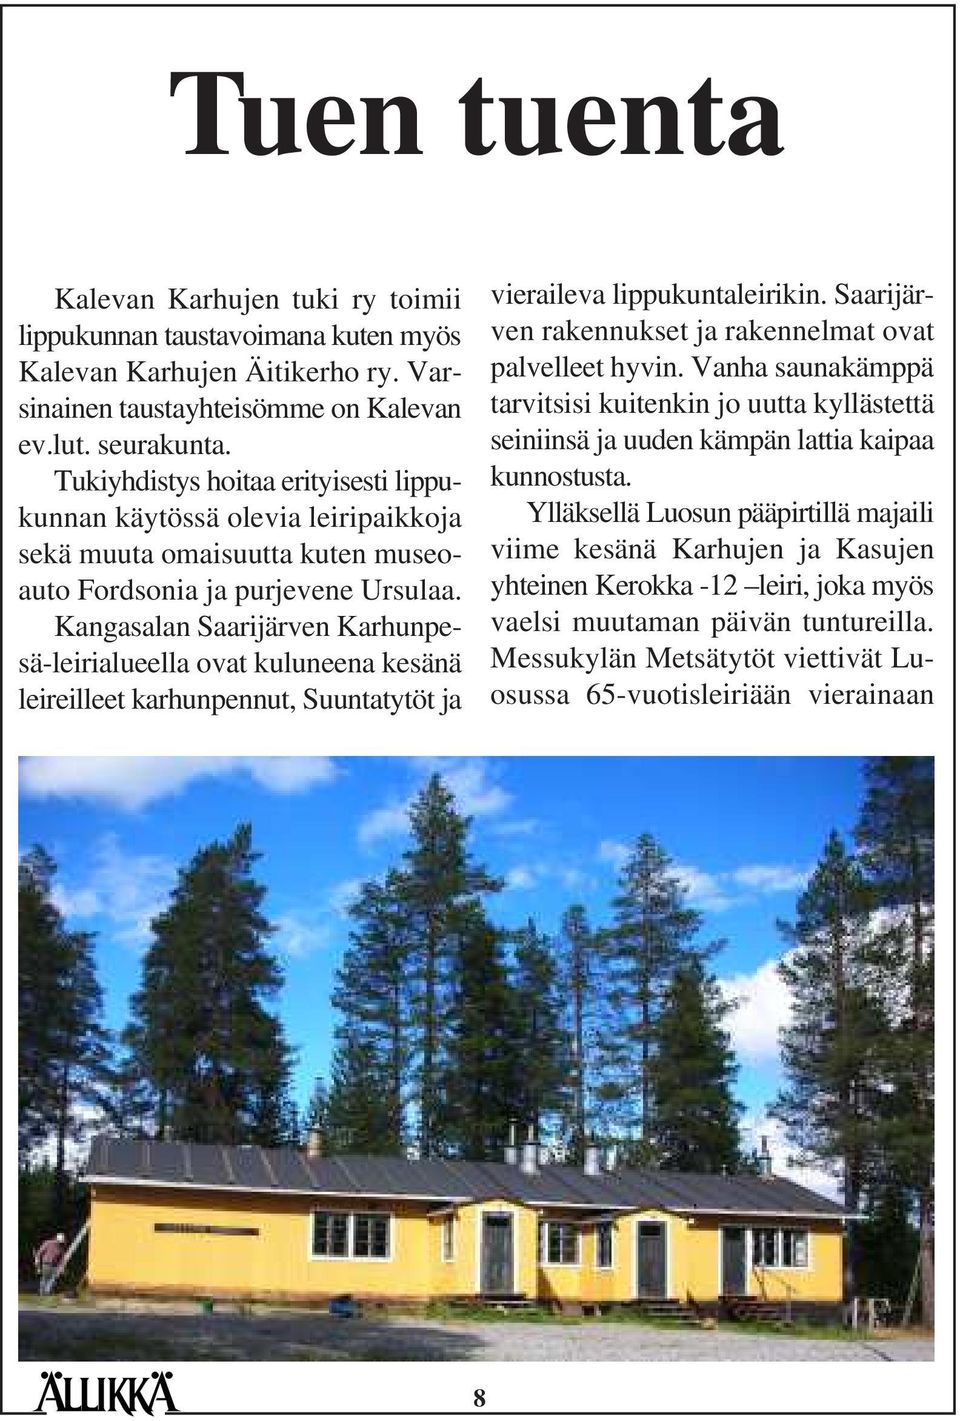 Kangasalan Saarijärven Karhunpesä-leirialueella ovat kuluneena kesänä leireilleet karhunpennut, Suuntatytöt ja vieraileva lippukuntaleirikin.